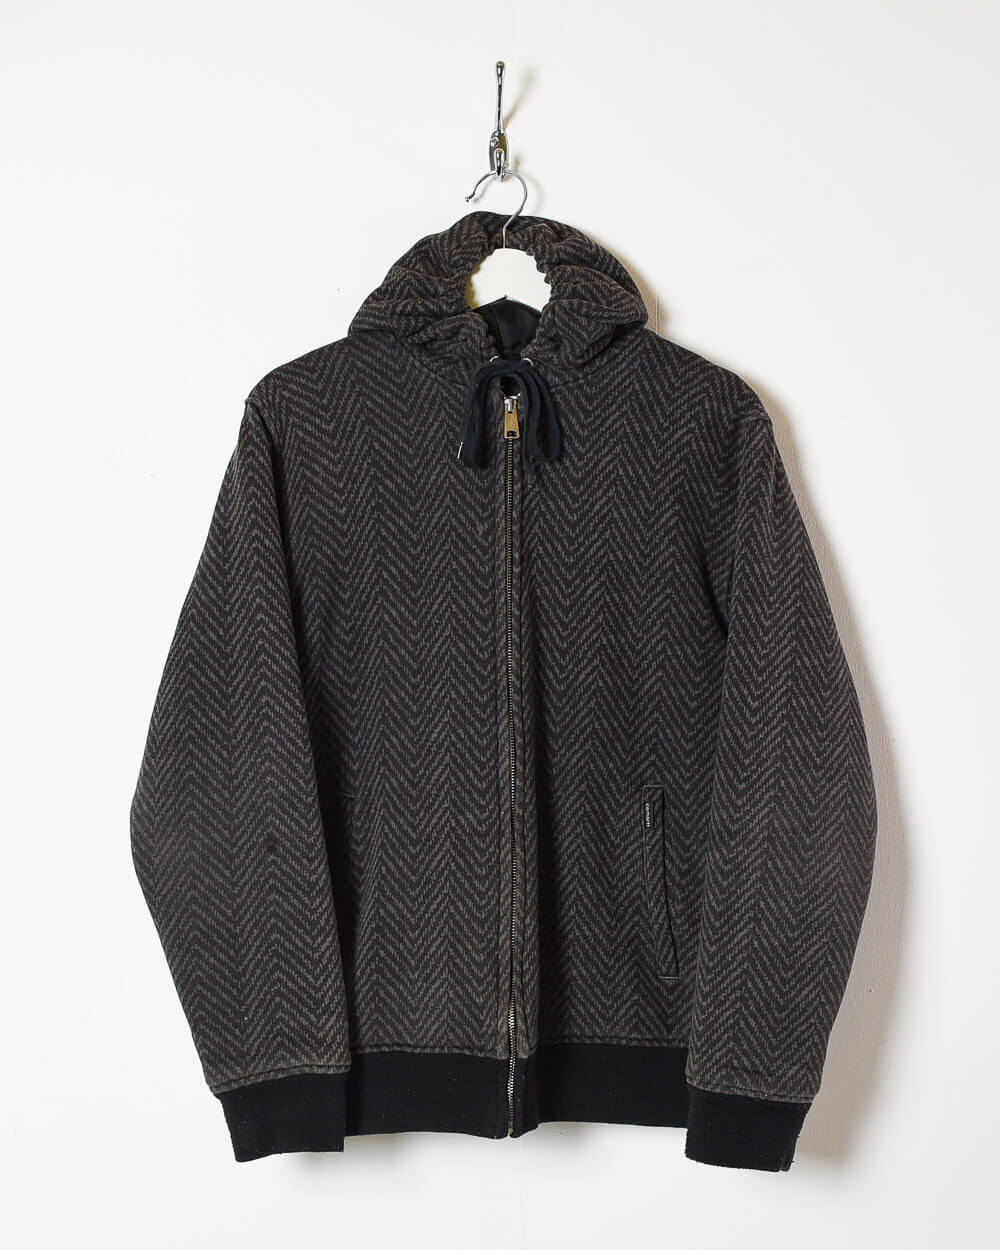 Black Carhartt Outdoor Wear Hooded Jacket - Medium